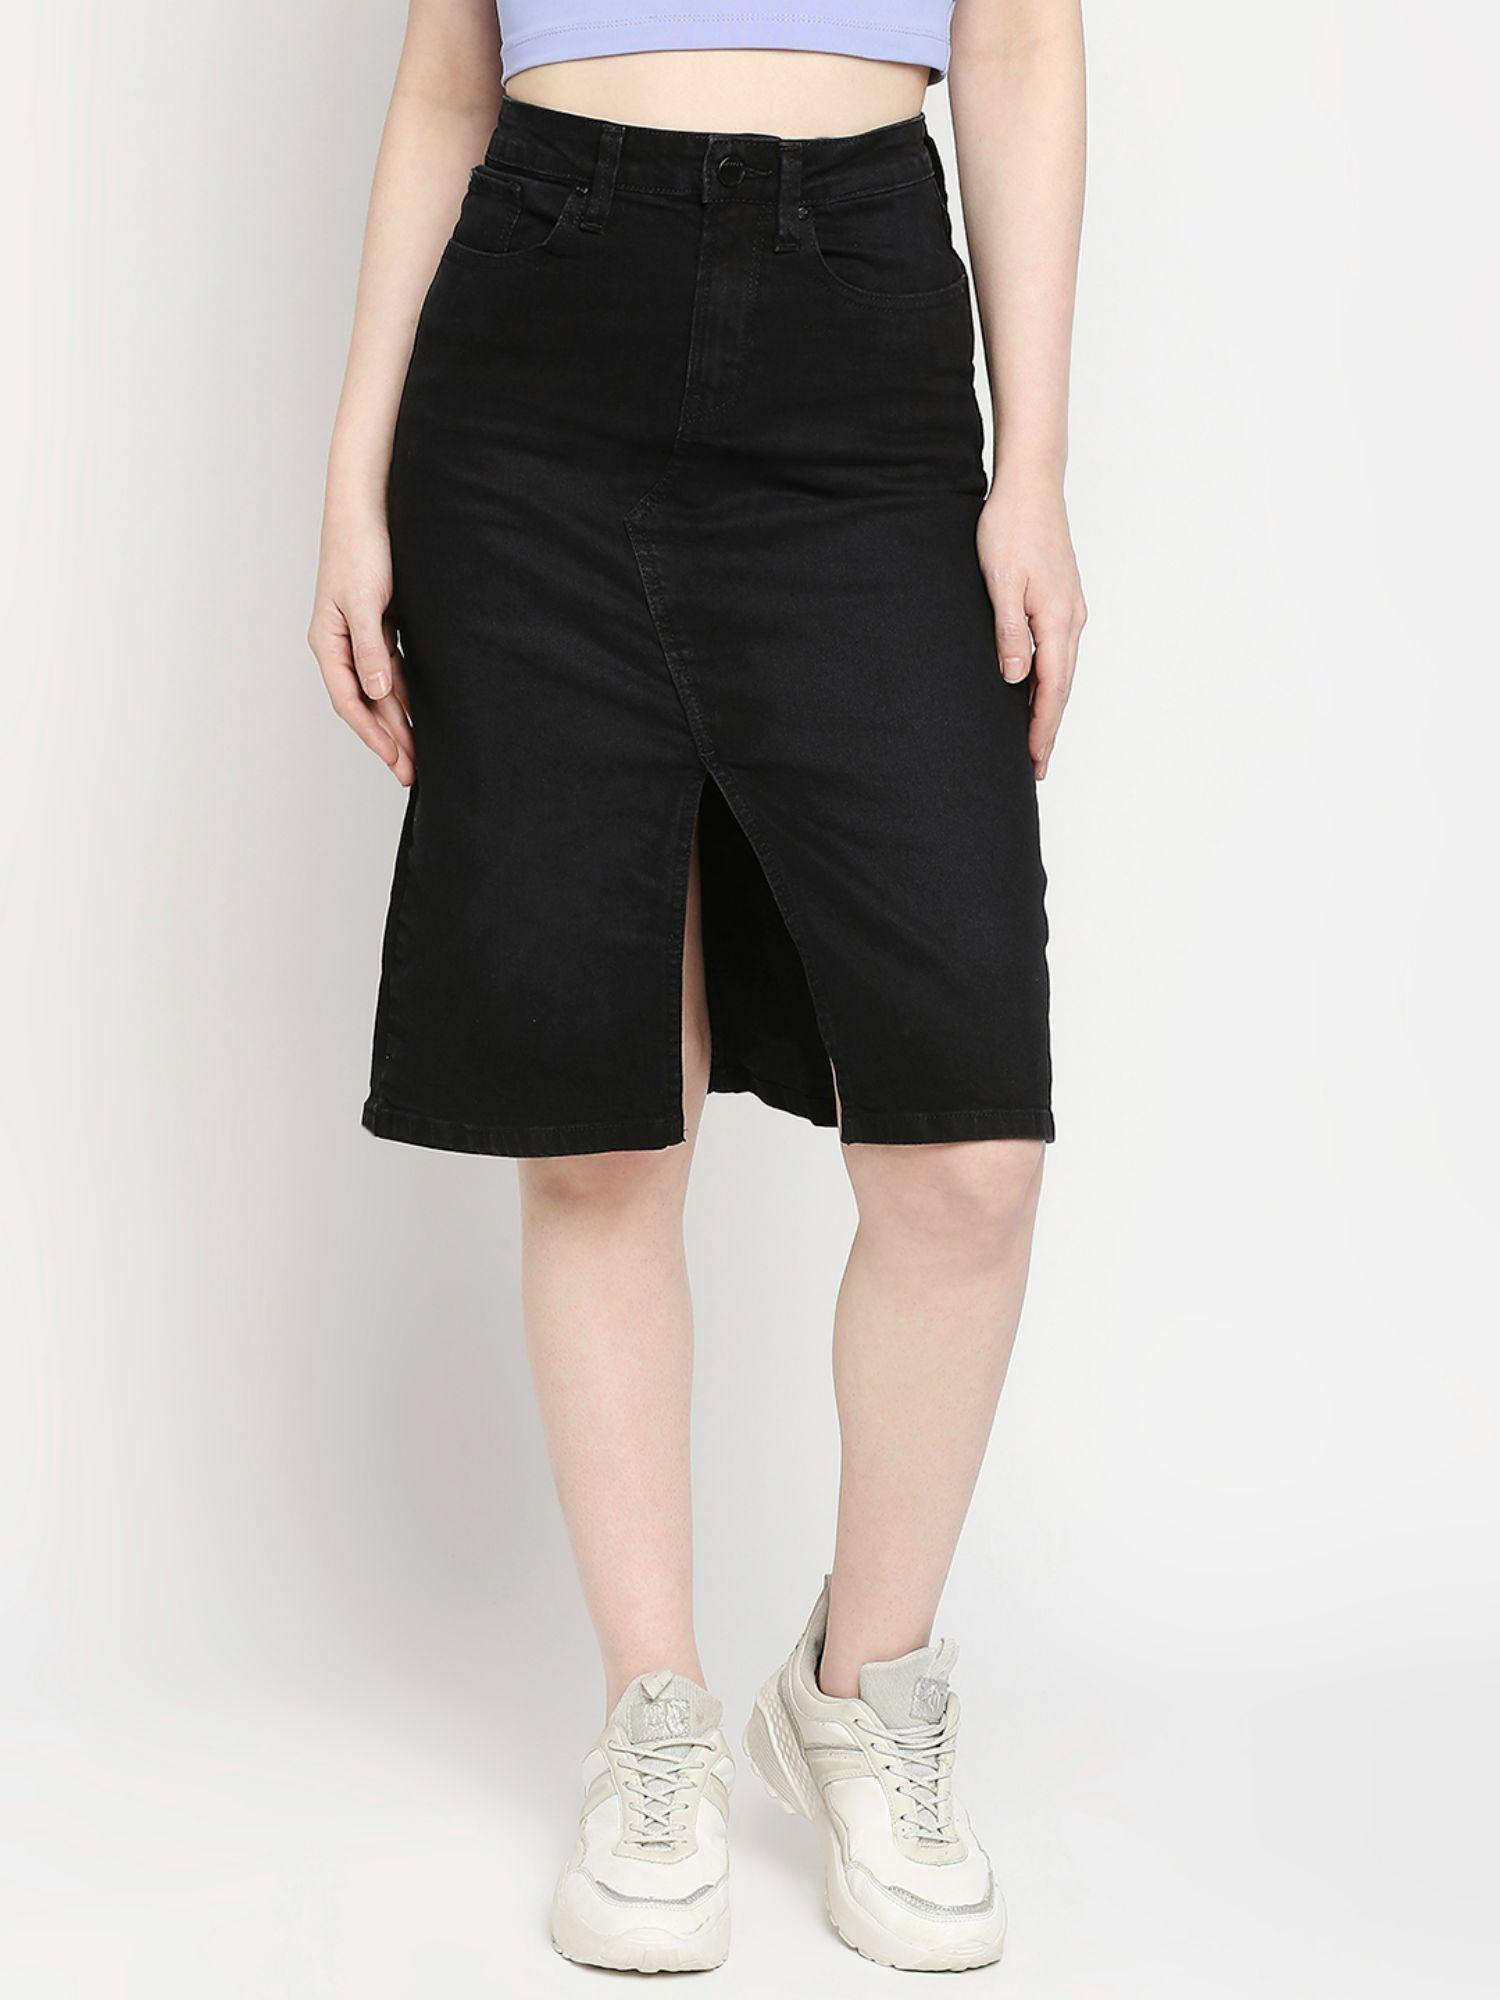 black-cotton-straight-fit-regular-length-skirt-for-women-(bella)